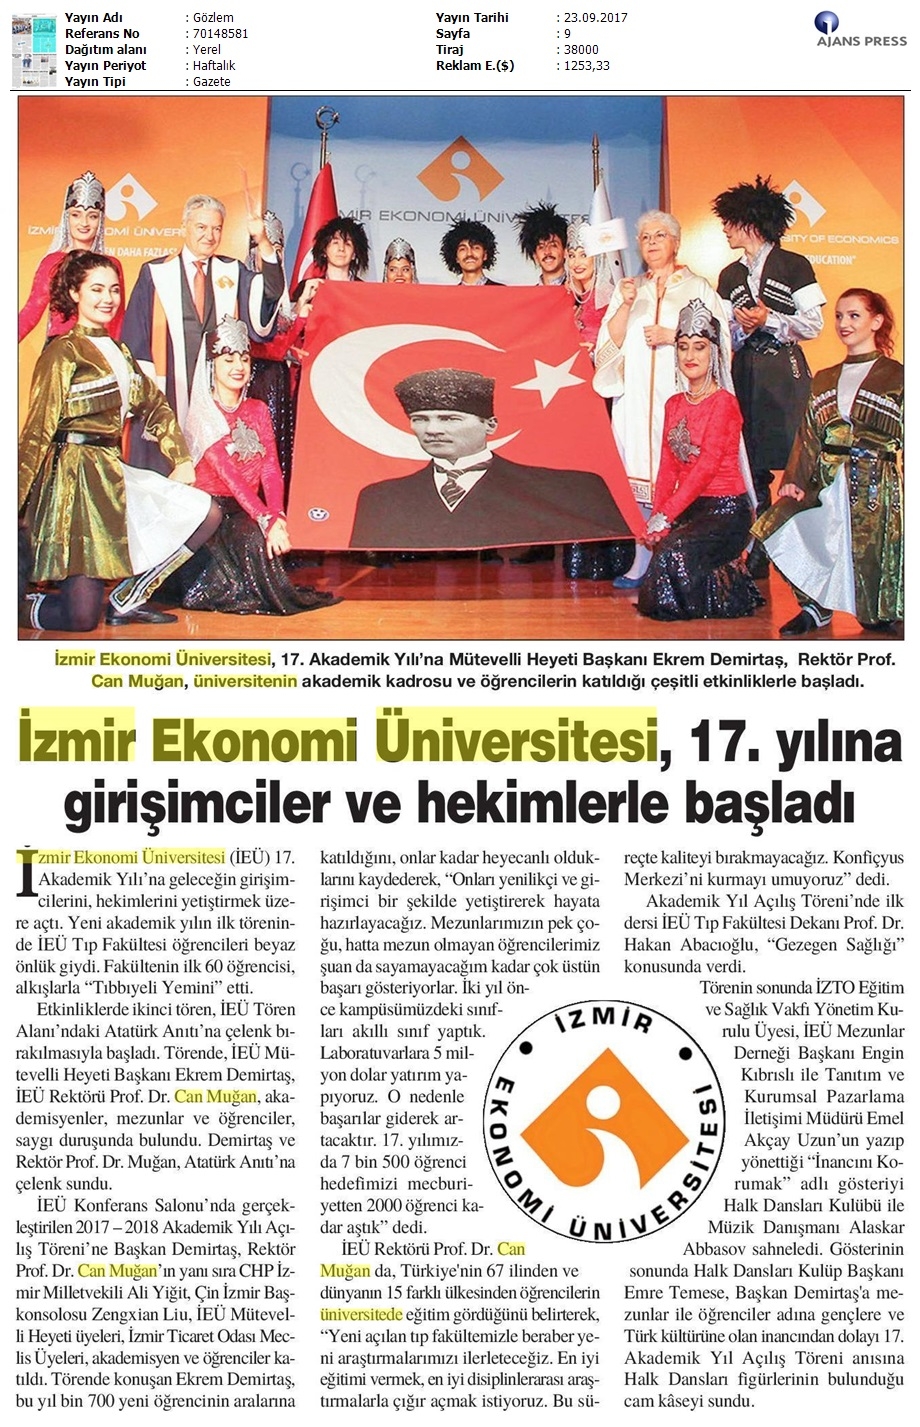 İzmir Ekonomi Üniversitesi 17. yılına girişimciler ve hekimlerle başladı